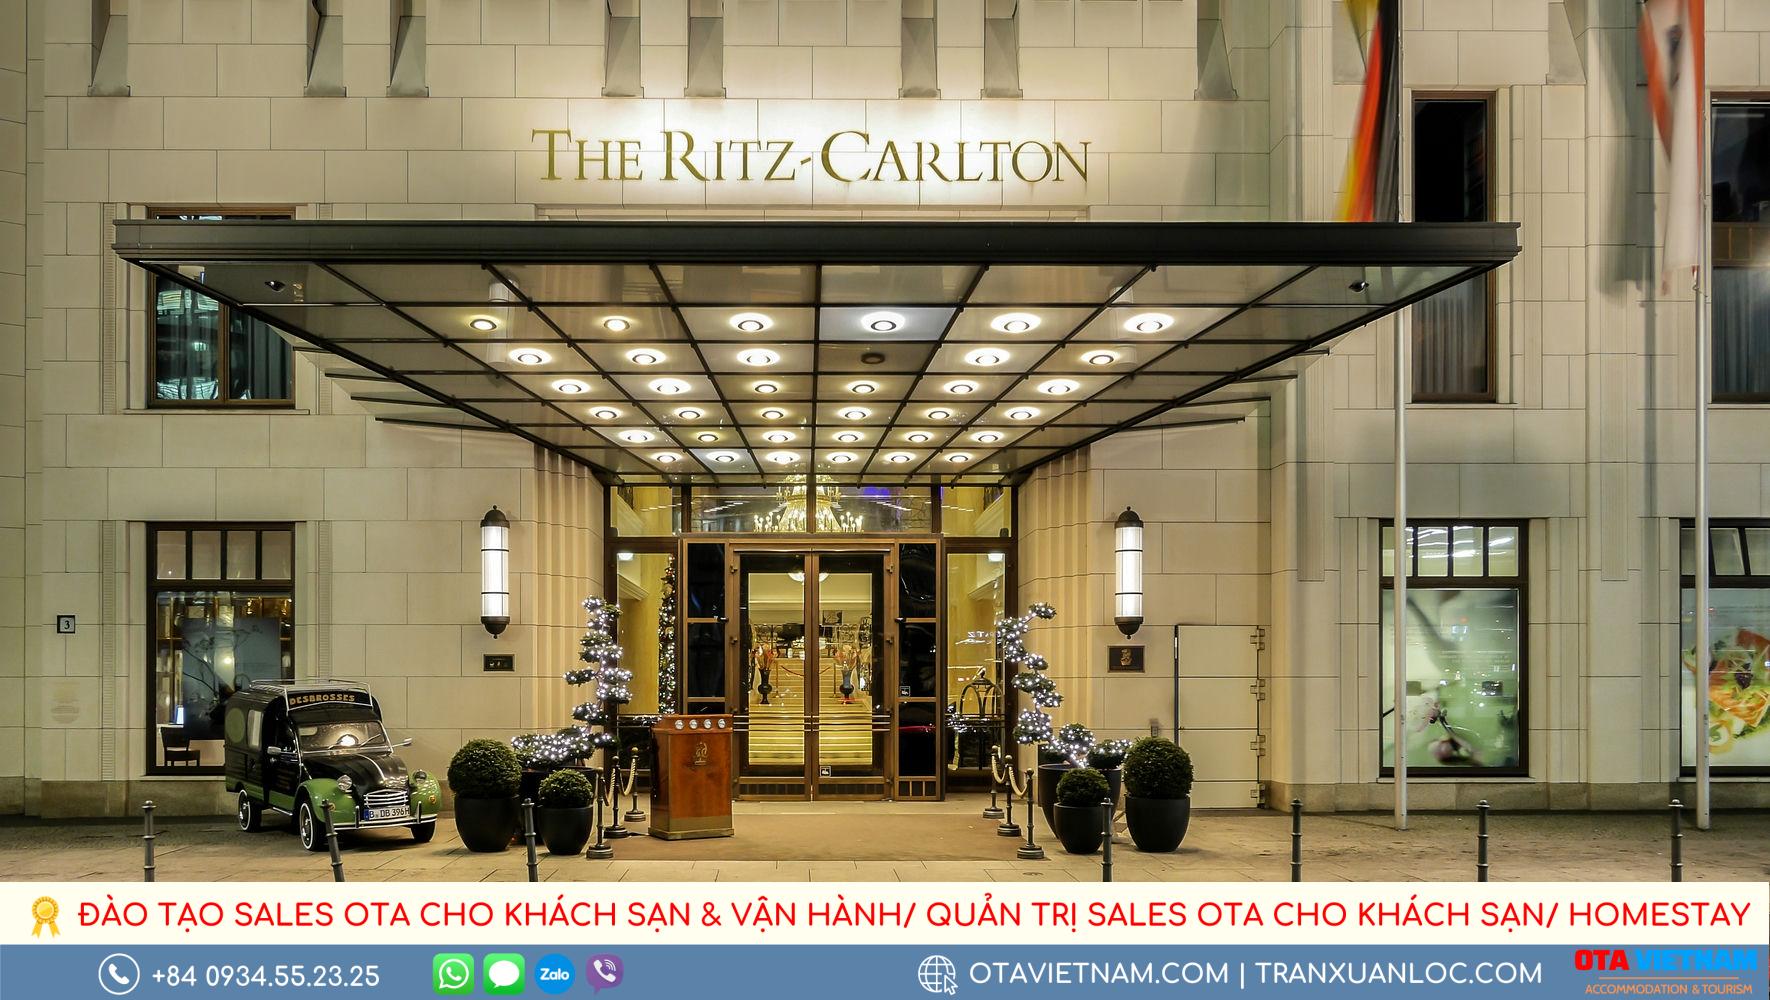 Tieu Chuan Vang Duoc Khoi Xuong Tu Chuoi Khach San Ritz Carlton Noi Tieng1 1000px